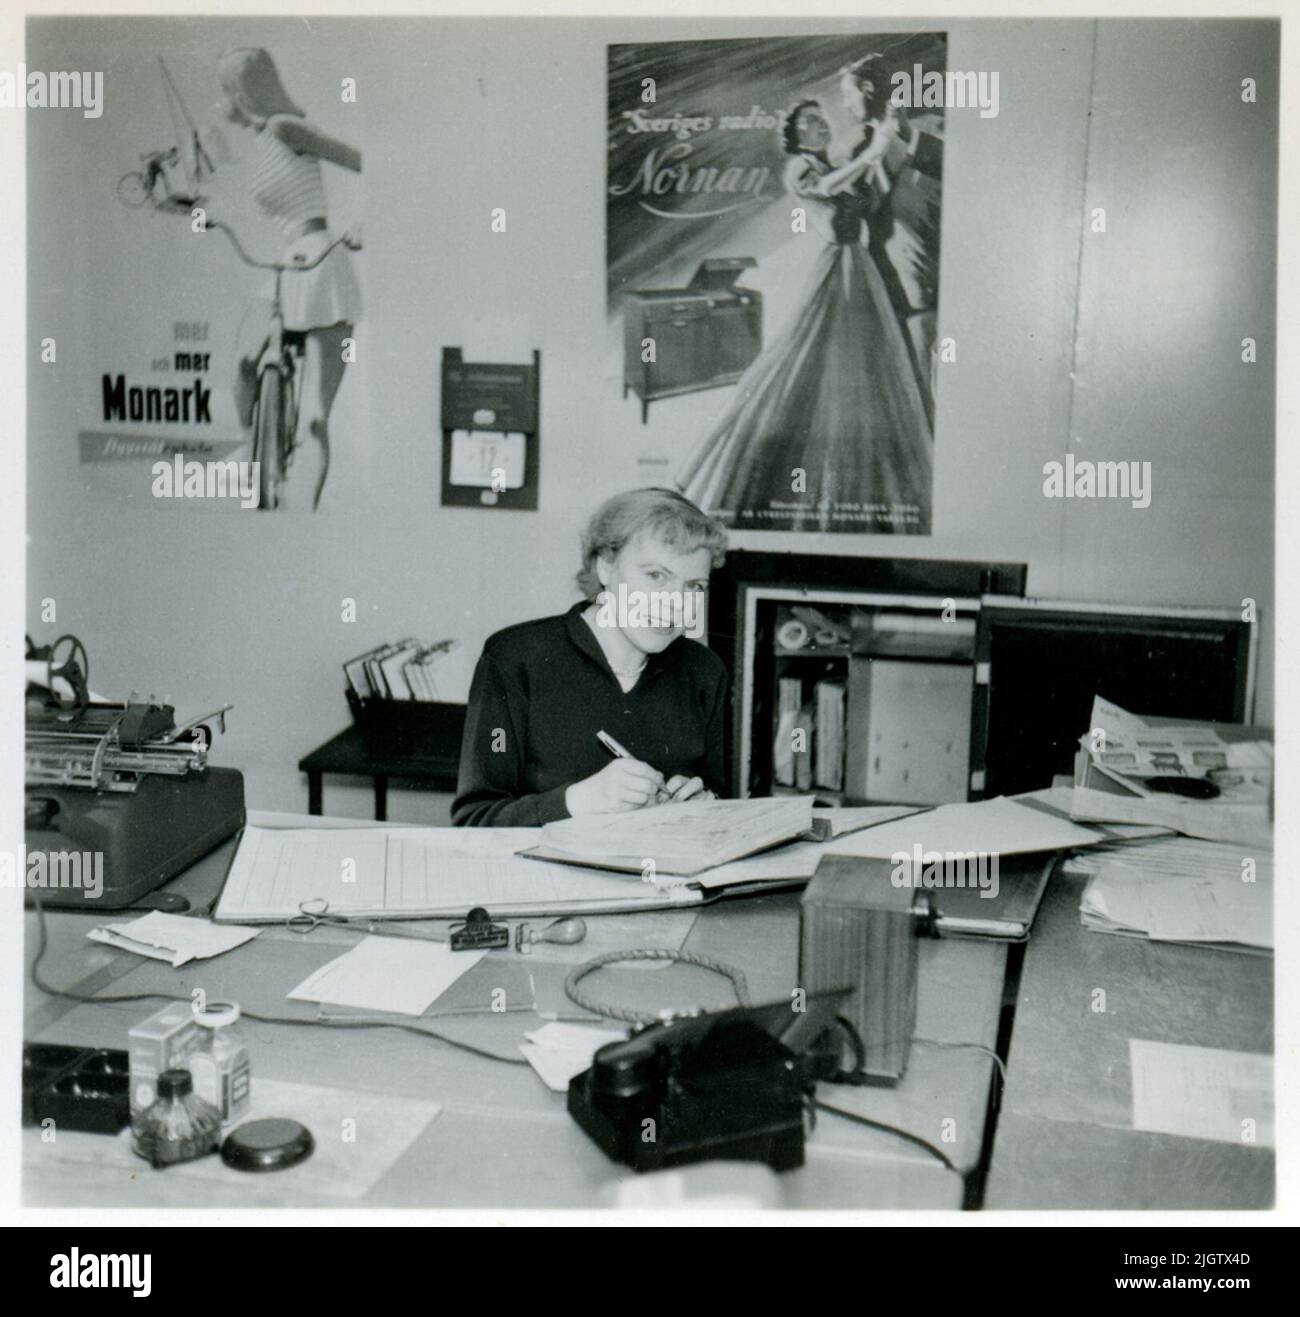 Das Büro in der Fahrradwerkstatt von Monarch. Eine Frau sitzt an einem Schreibtisch und schreibt in einem Cover. An der Wand hinter ihr befindet sich ein Plakat mit Werbung für Monarks Fahrräder und eines für Monarks Radiomöbel "Swedish Radio Nornan". Stockfoto